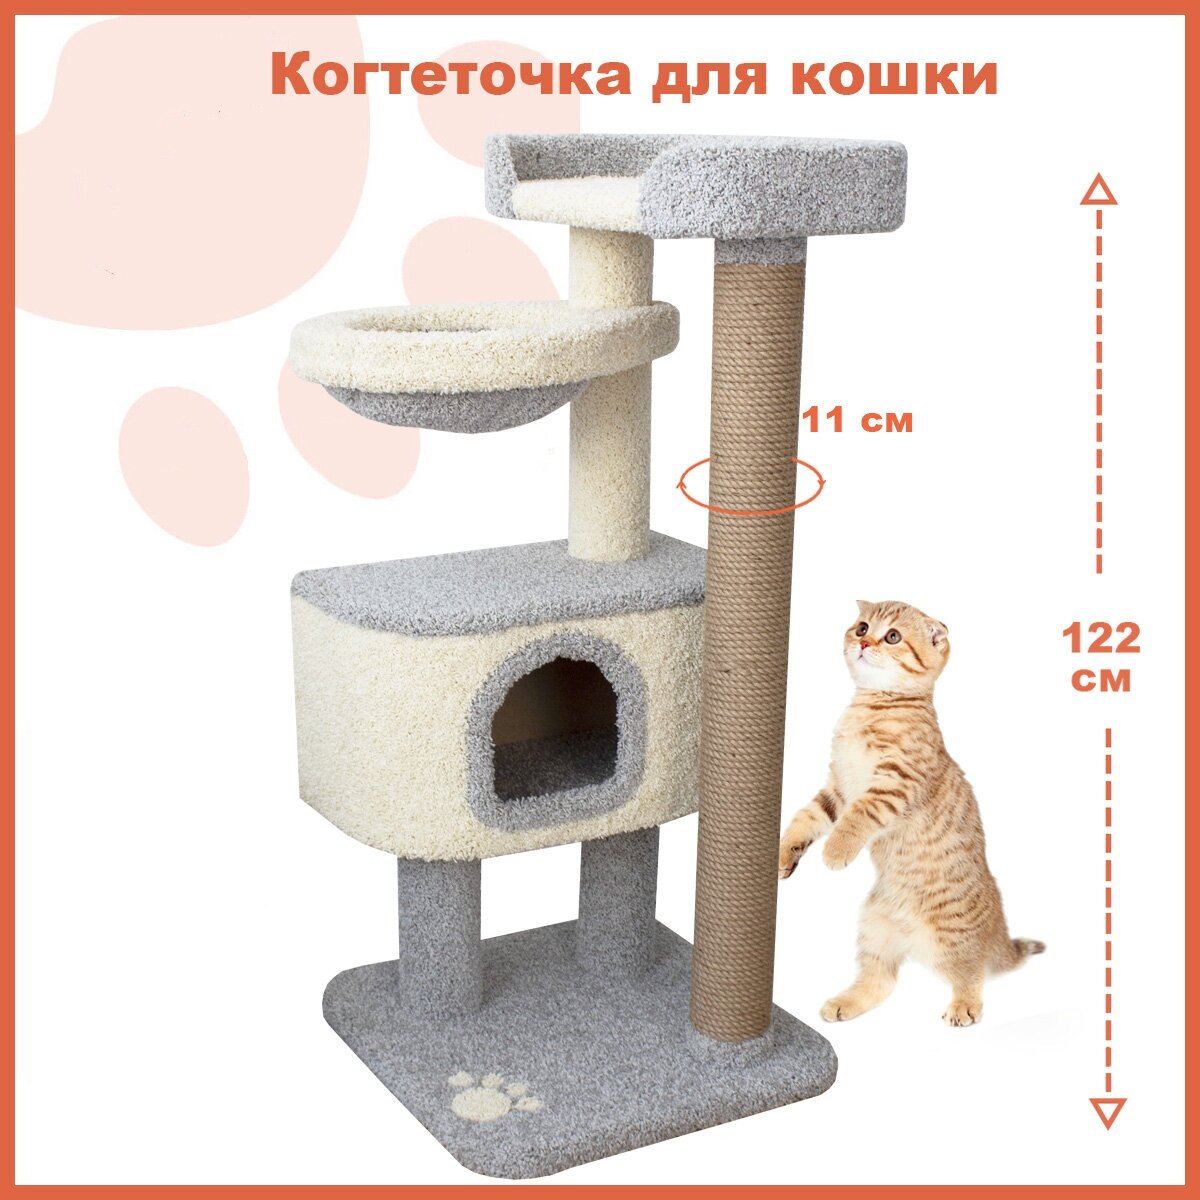 Когтеточка для кошки "Полет" домик и лежанка для животных, серый цвет